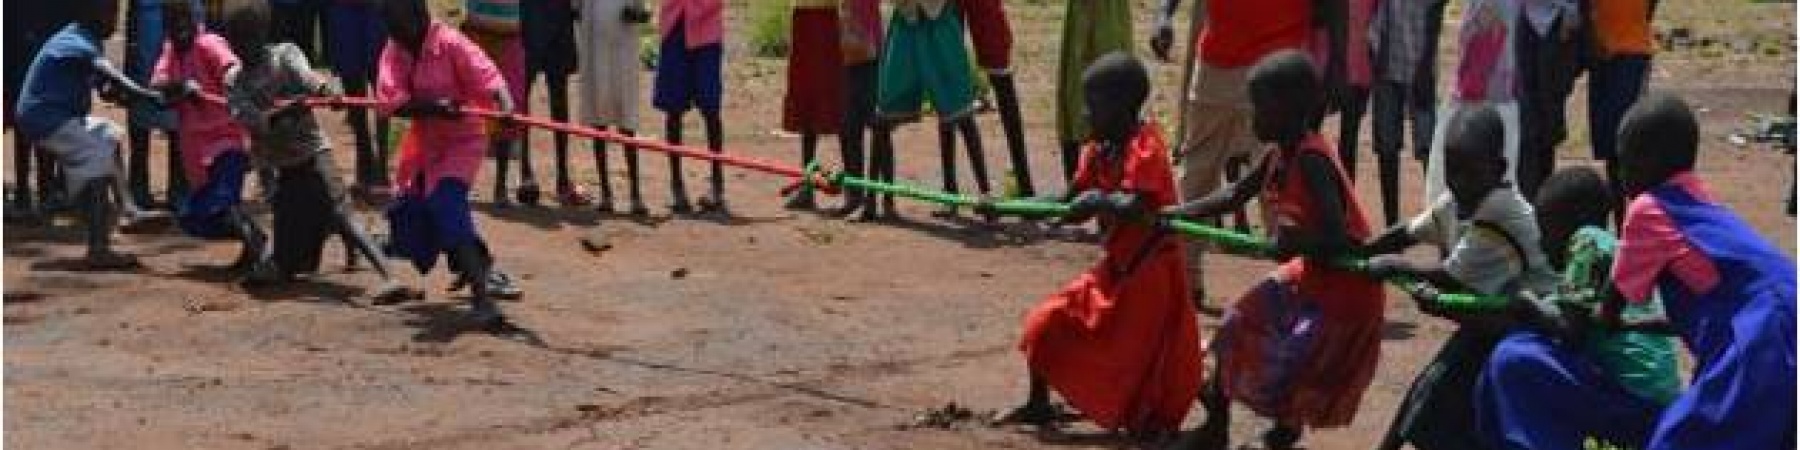 Save the Children e il reinserimento sociale degli ex bambini soldato in Sud Sudan